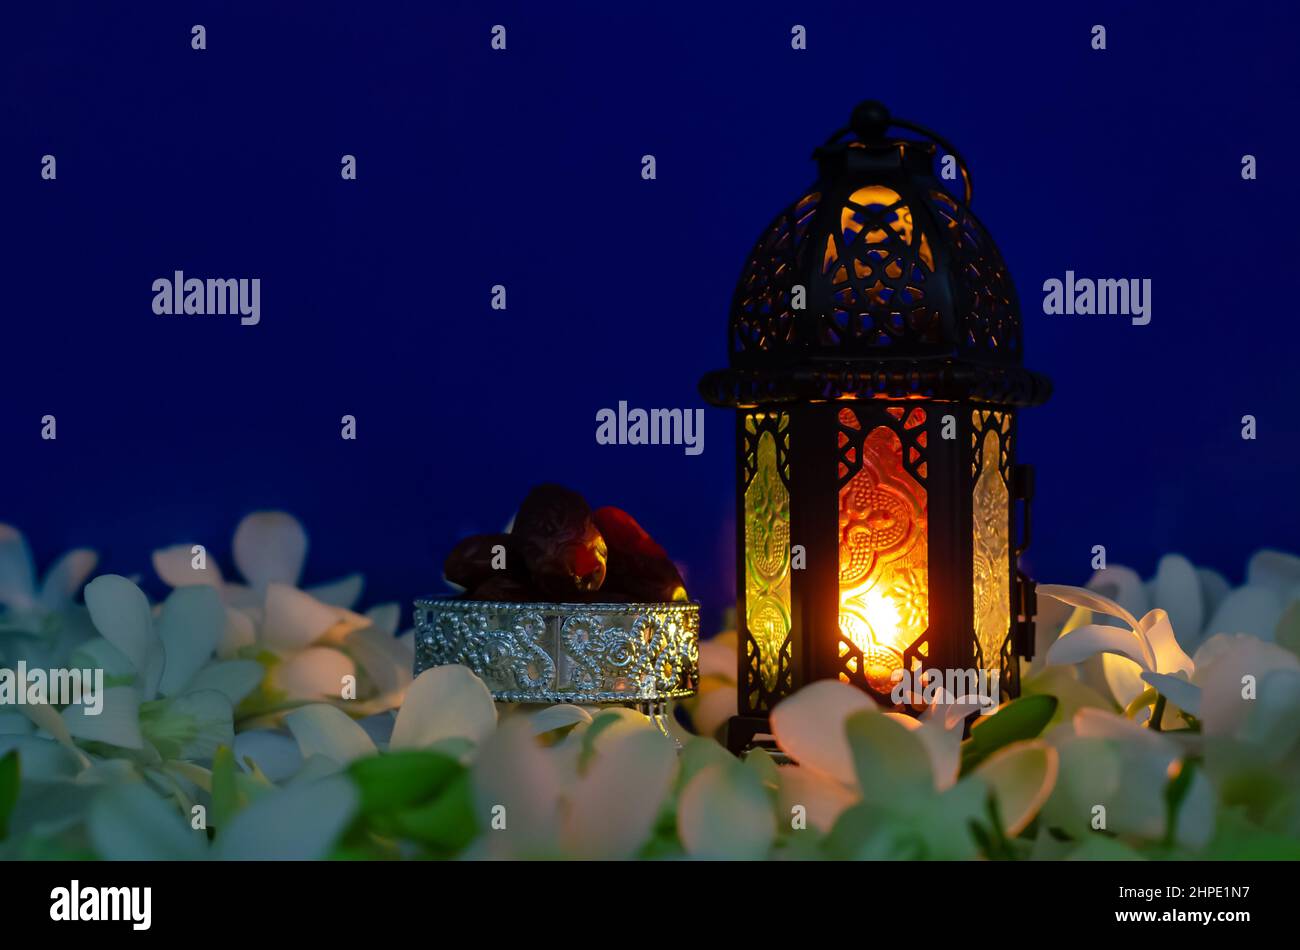 Lanterna su sfondo blu con datteri frutta su fiore di orchidea per la festa musulmana del mese santo di Ramadan Kareem. Foto Stock